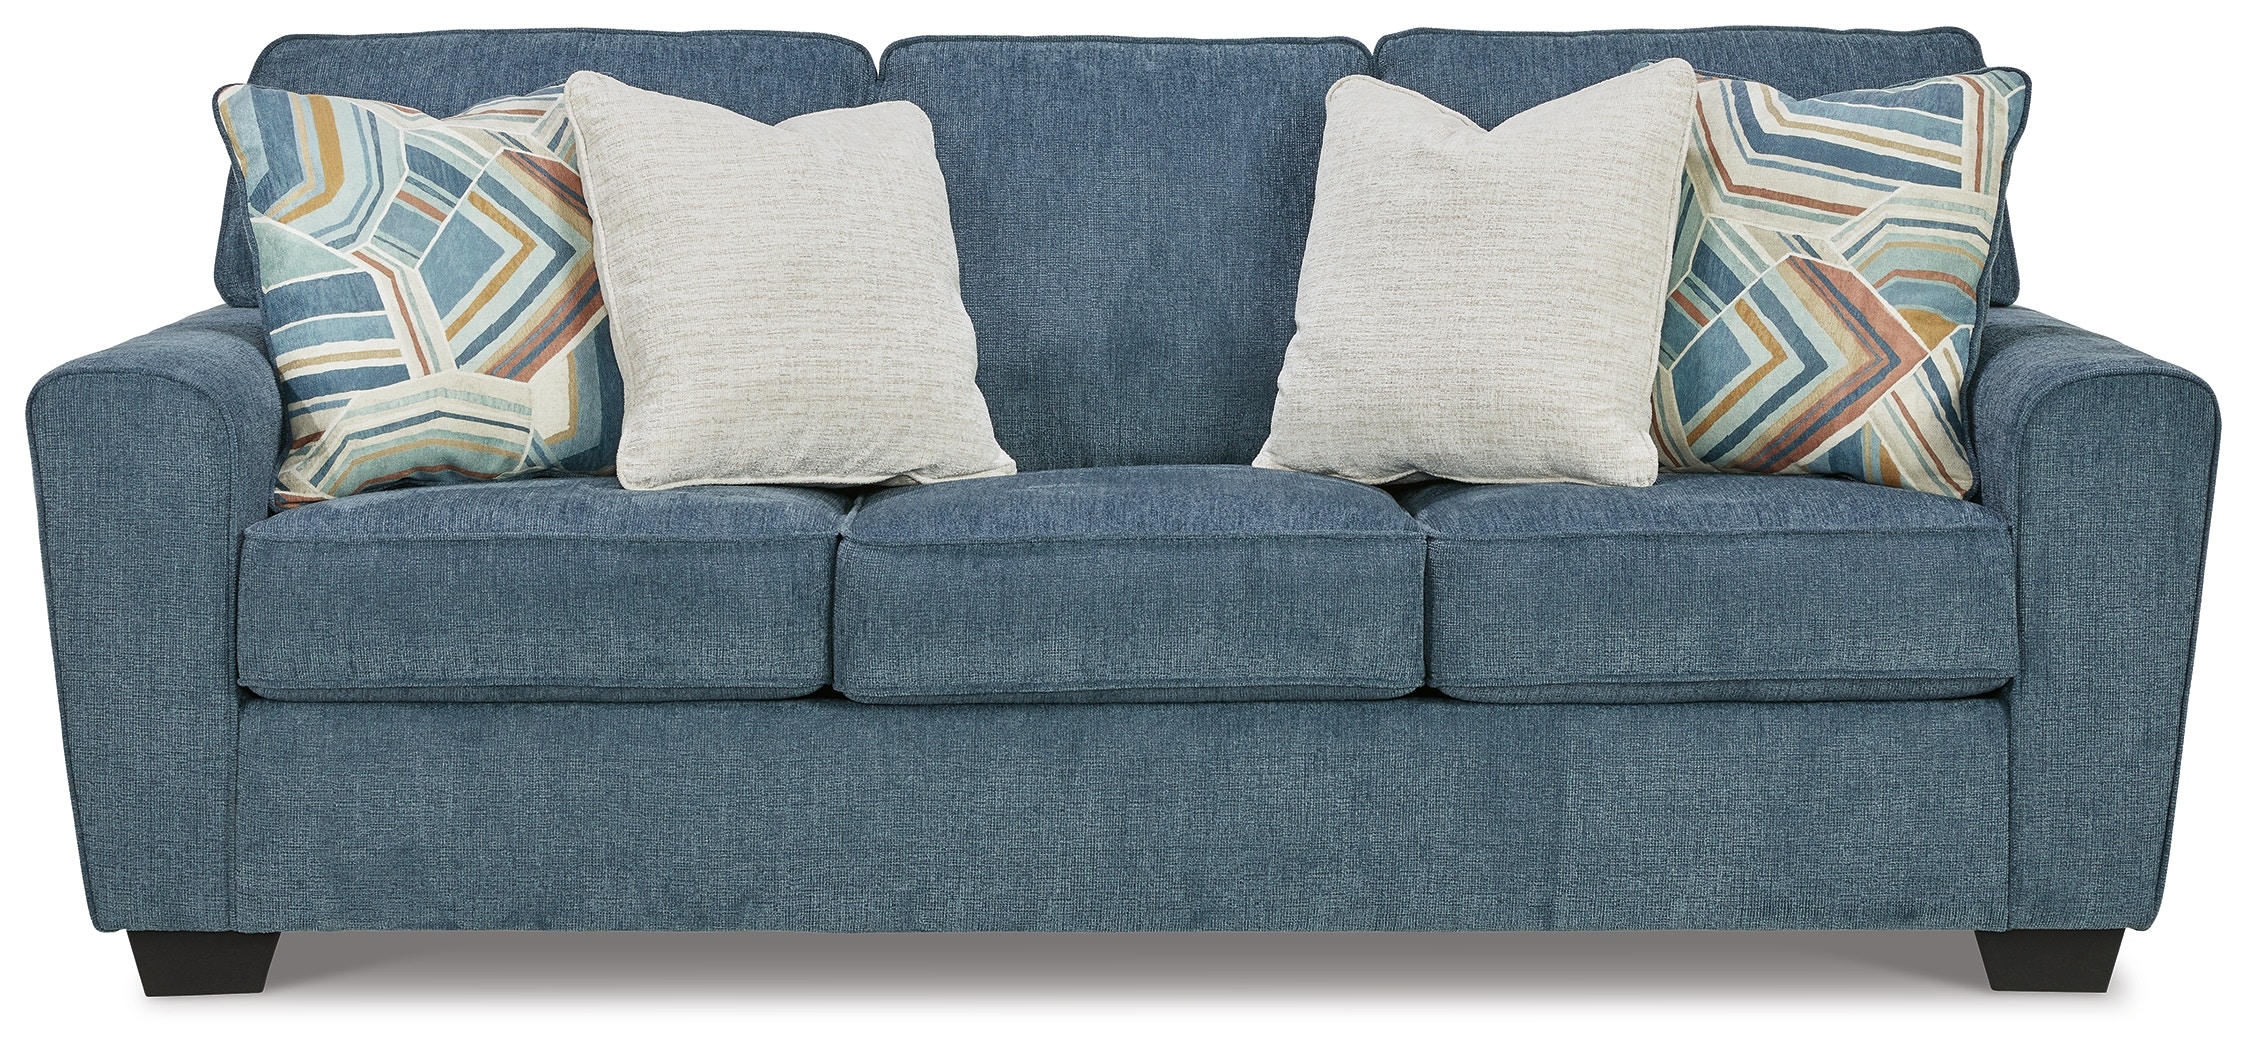 Sleeper Sofa Slipcover in Khaki Denim – The Slipcover Maker